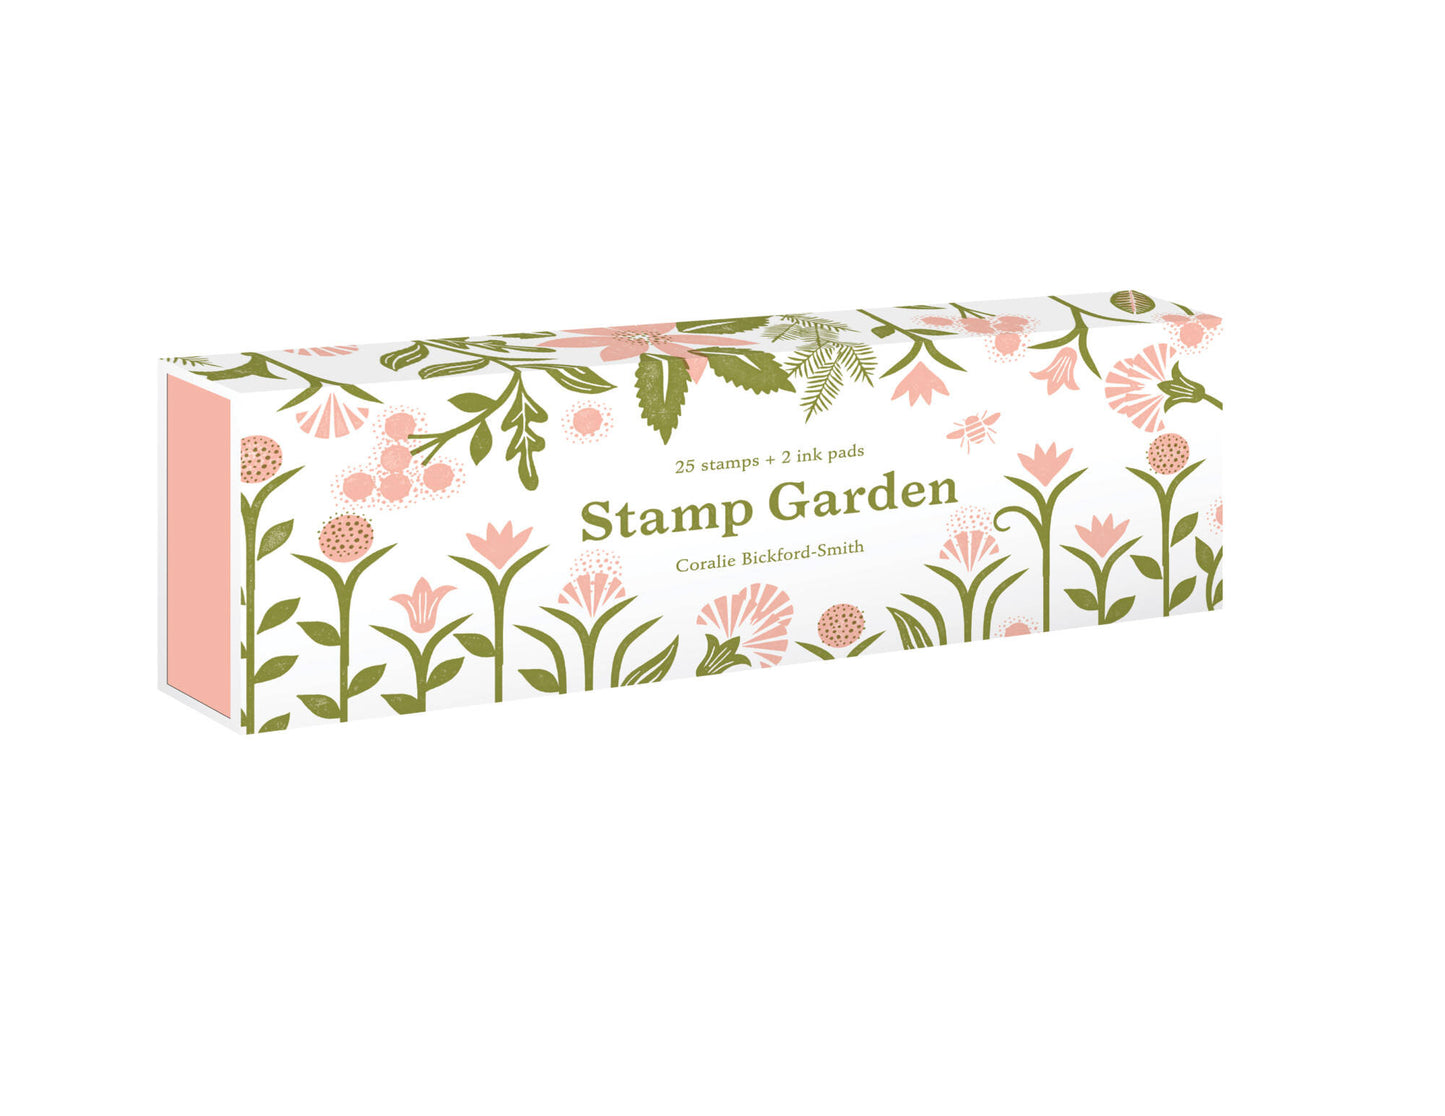 Stamp Garden set